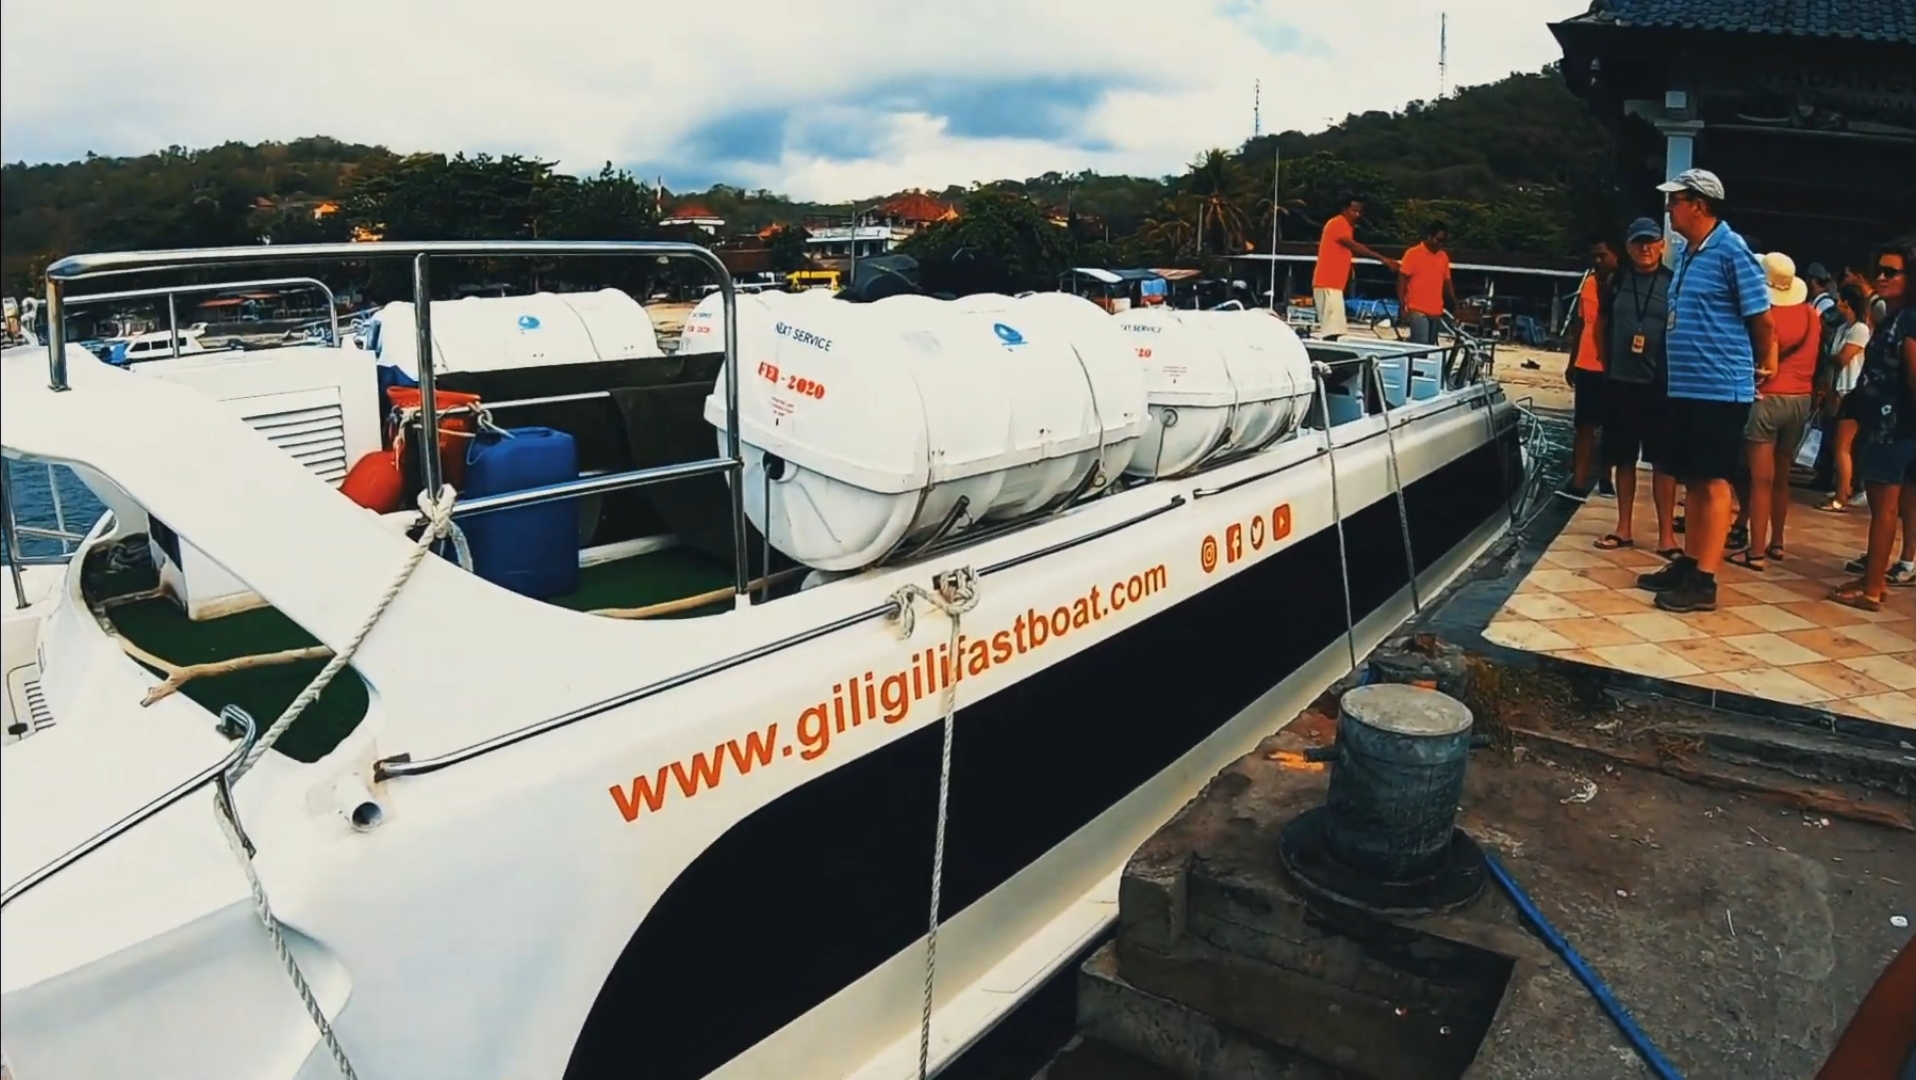 Compagnie de la traversée - Gili Gili fastboat - The Chris's Adventures